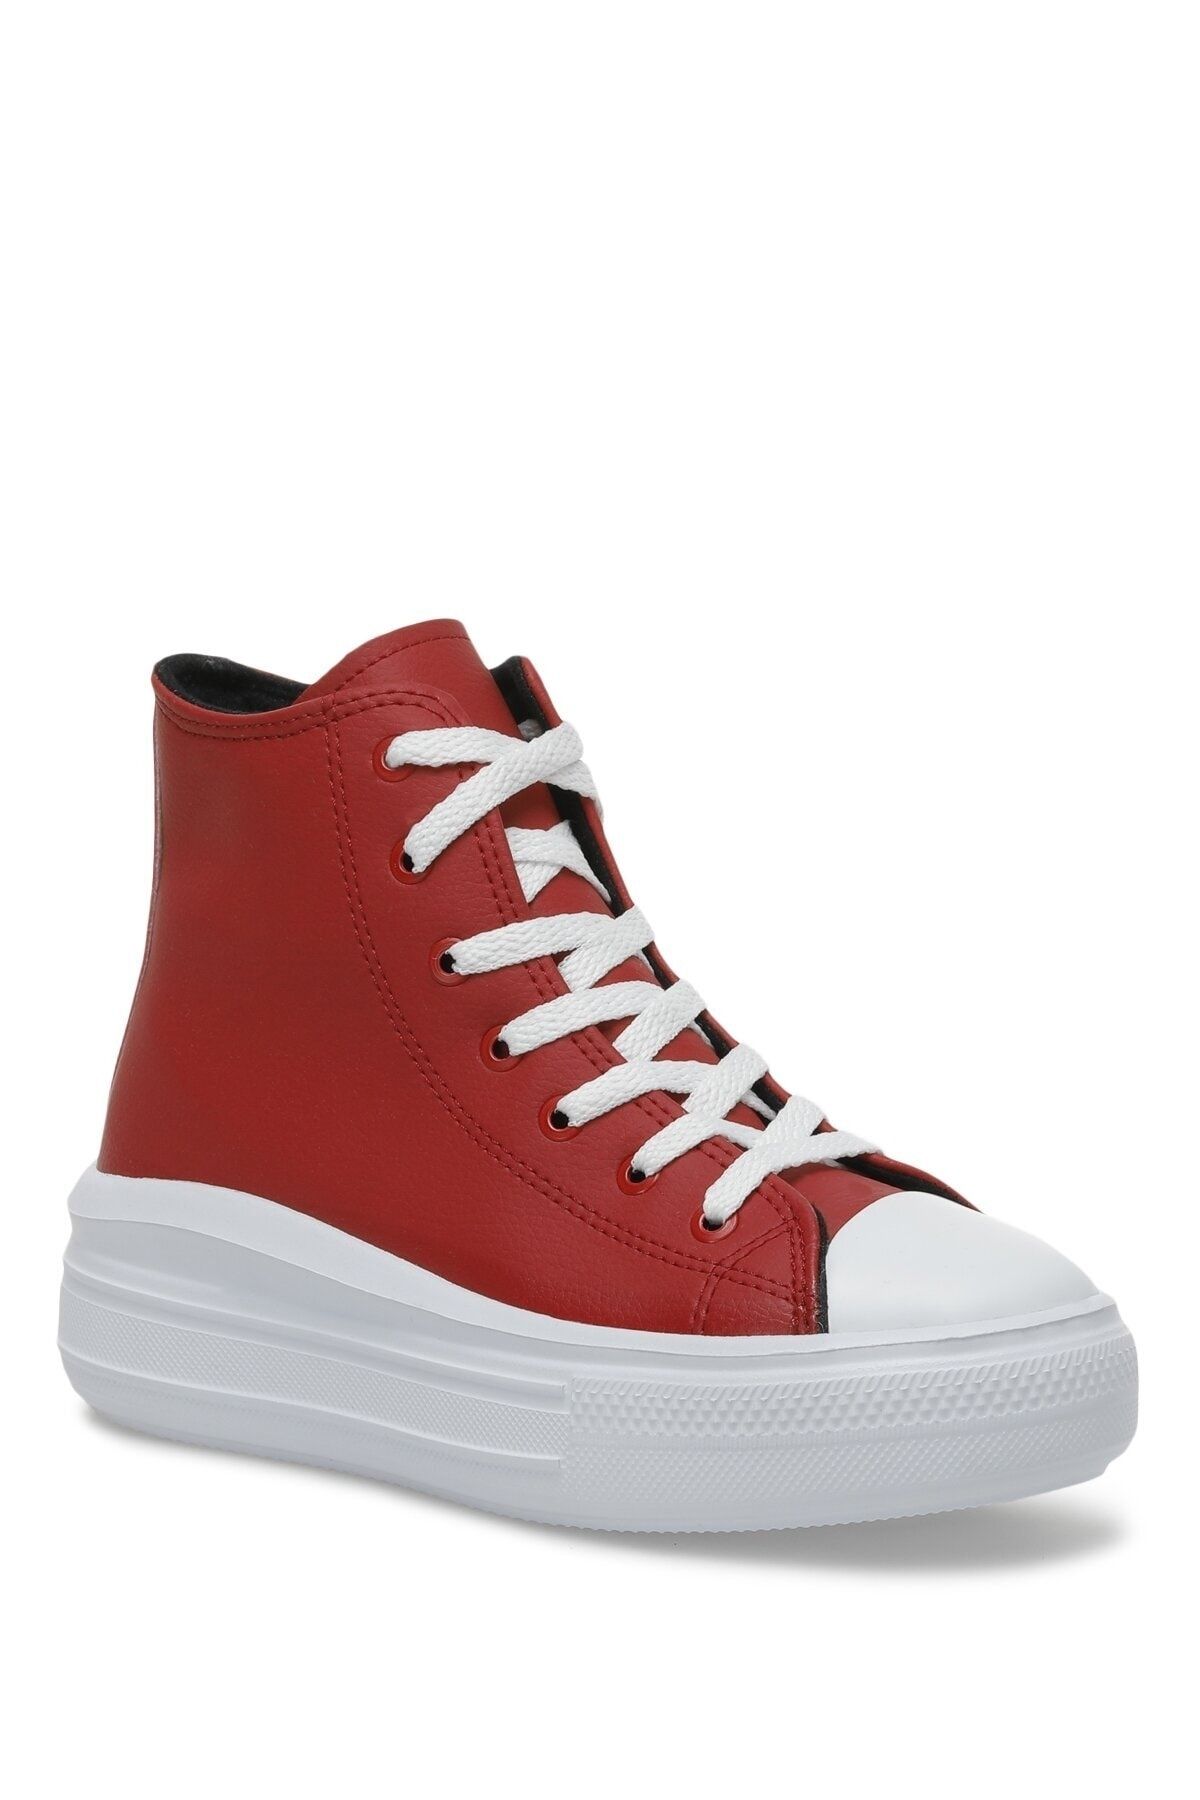 Butigo Perı 2pr Kırmızı Kadın Sneaker